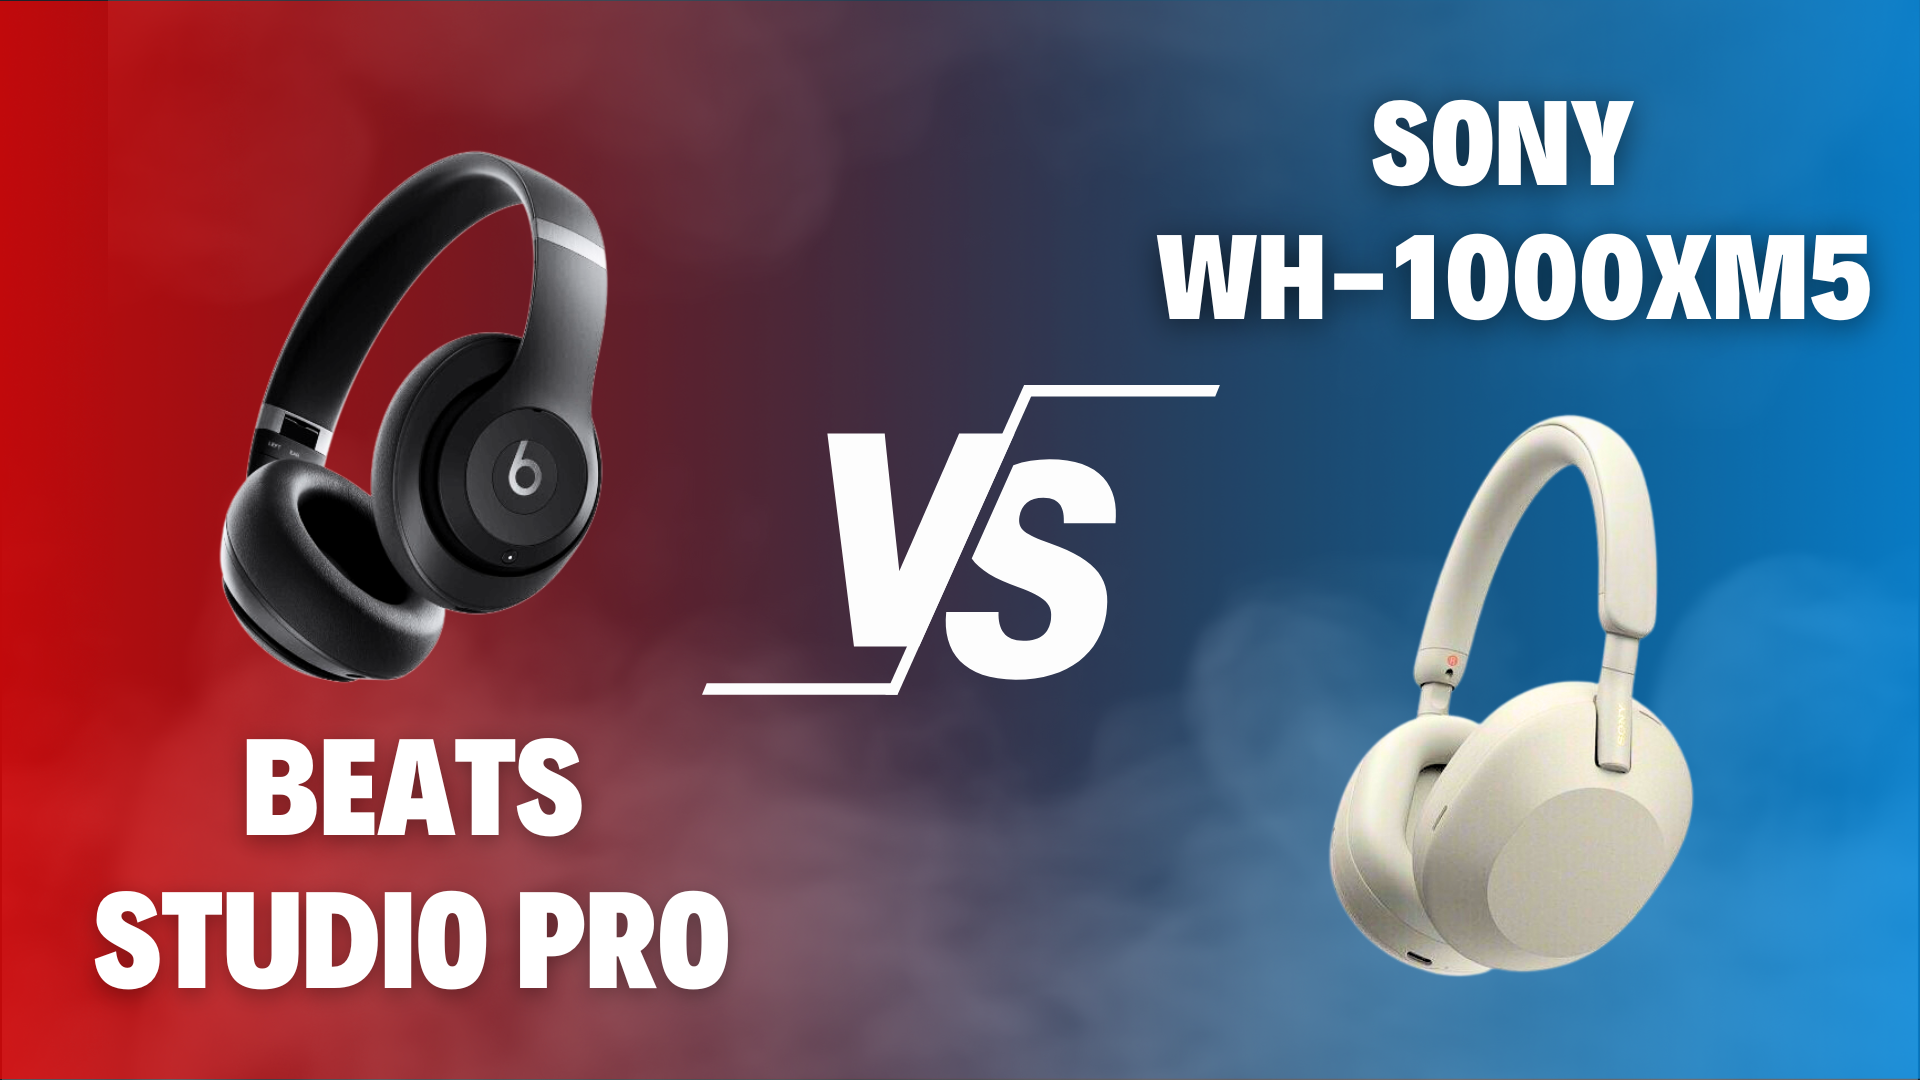 Beats Studio Pro vs Sony WH-1000XM5